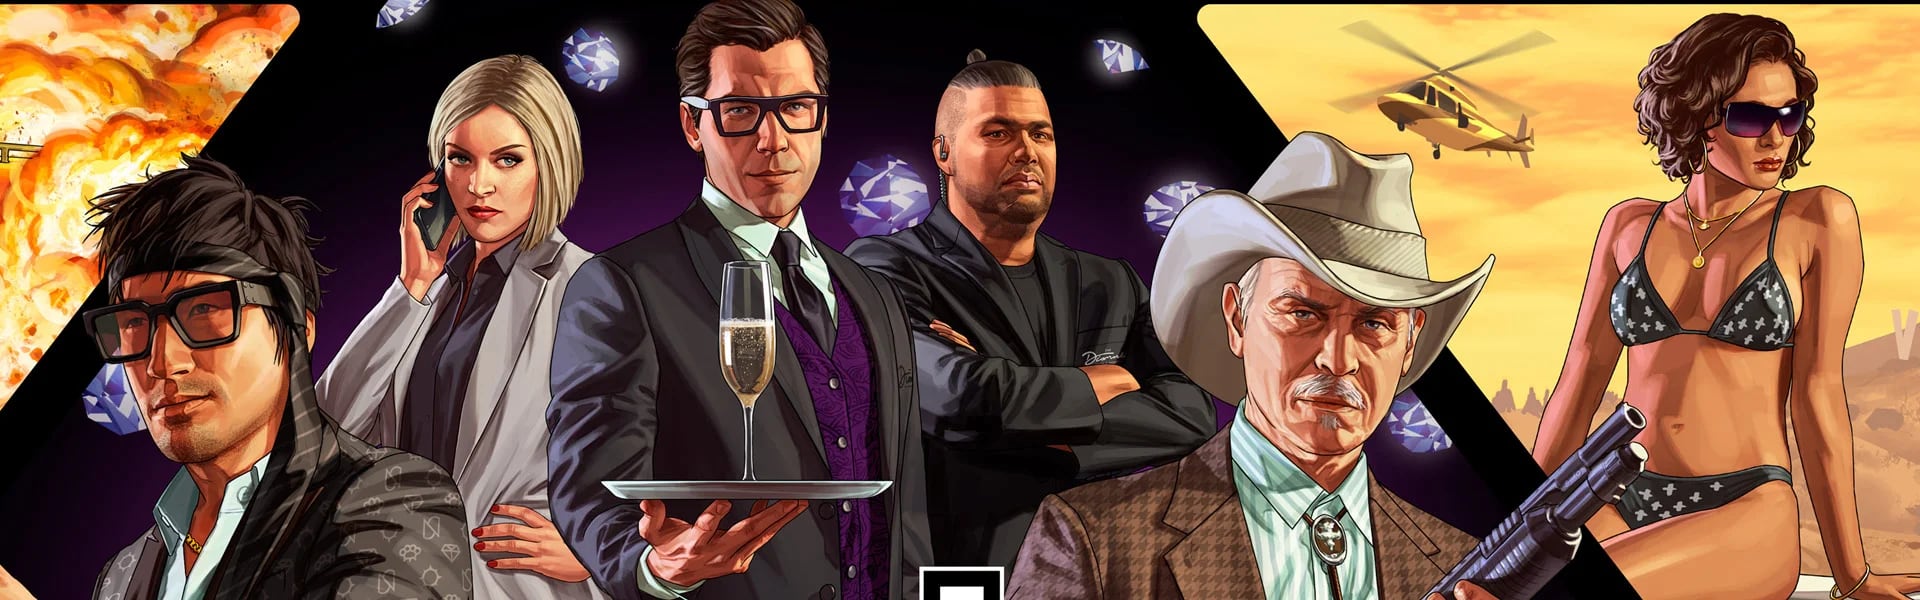 Uno de los últimos rumores indica que la franquicia de Rockstar Games, Grand Theft Auto, podría lanzar su nuevo juego en exclusiva para PlayStation 5.